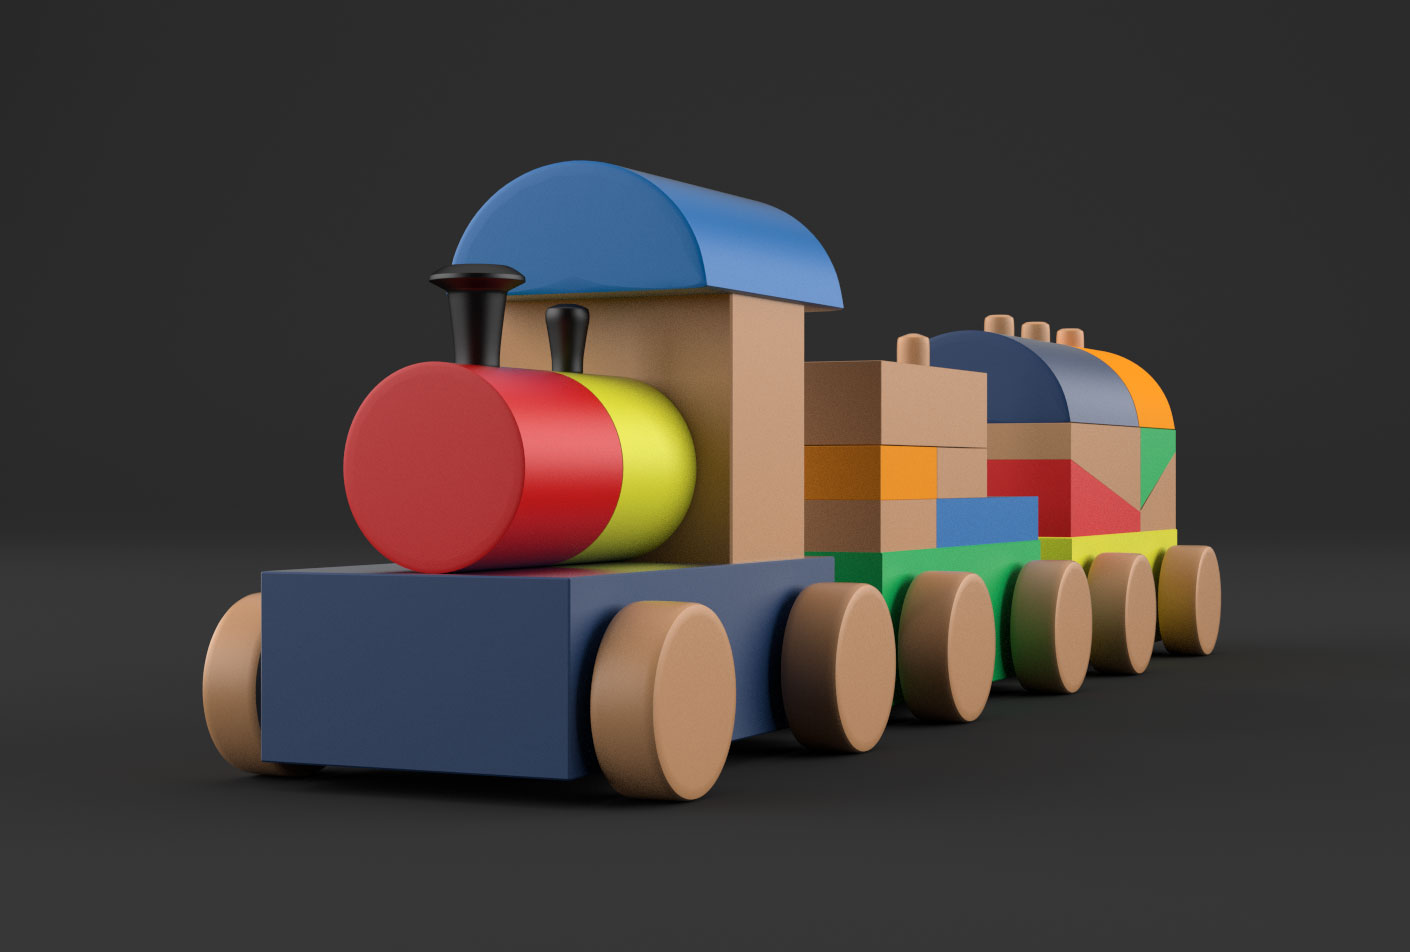 D toys. 3д игрушки. Детские игрушки 3d. Проектирование 3д игрушек для детей. 3d модели игрушек.